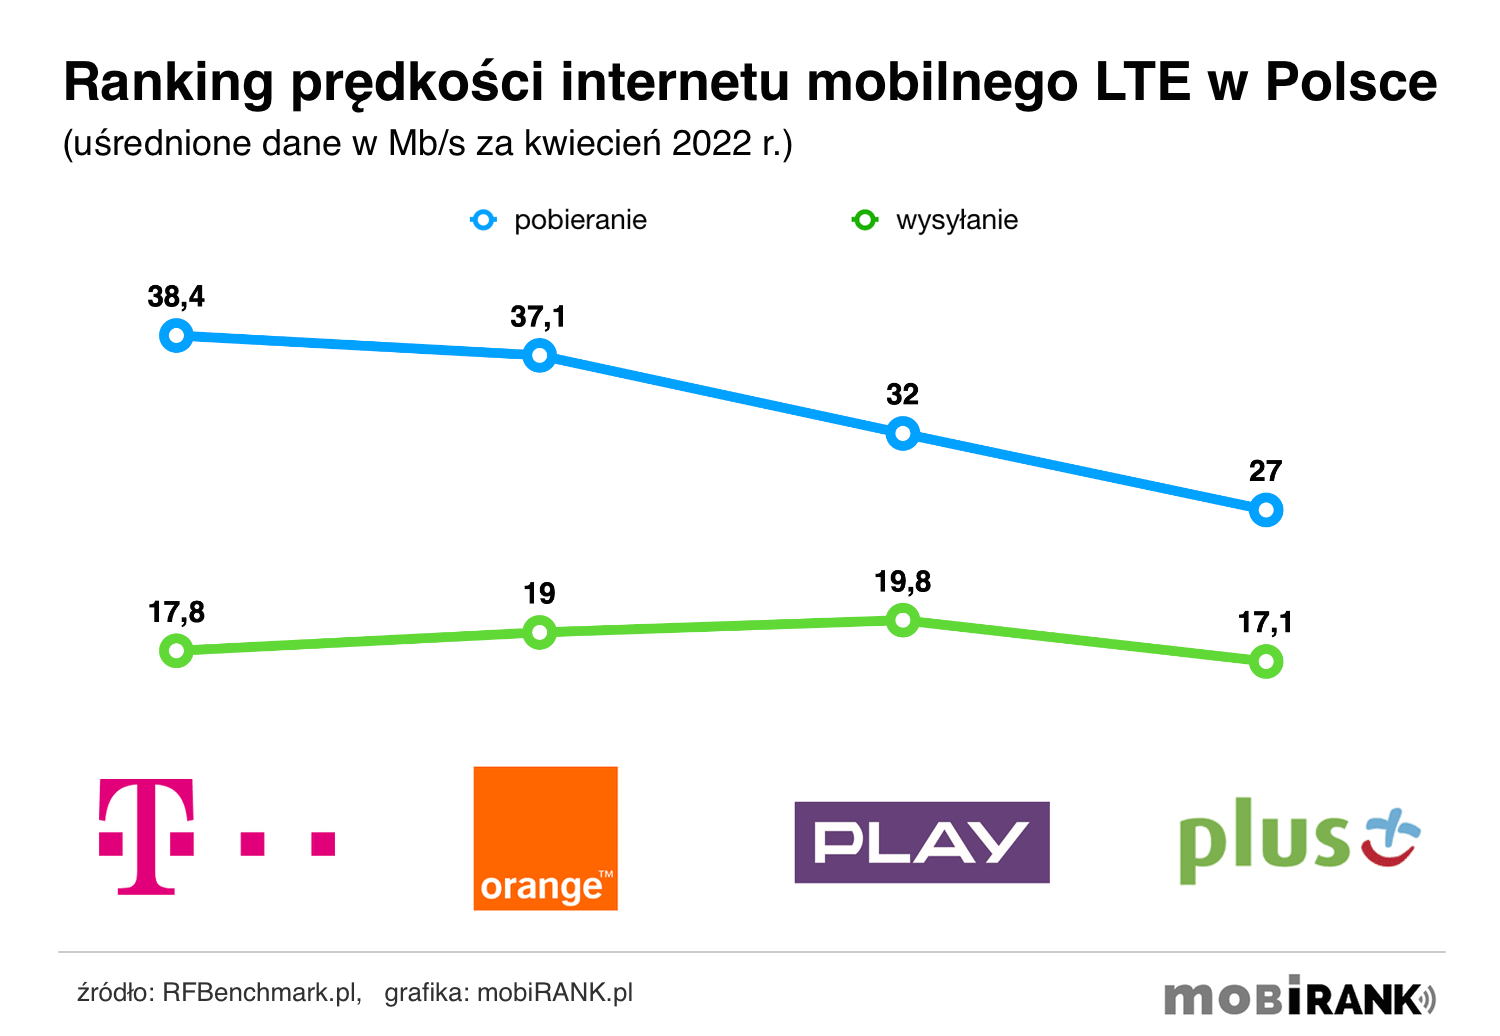 Ranking prędkości internetu mobilnego LTE (4G) w Polsce (dane za kwiecień 2022 r.)